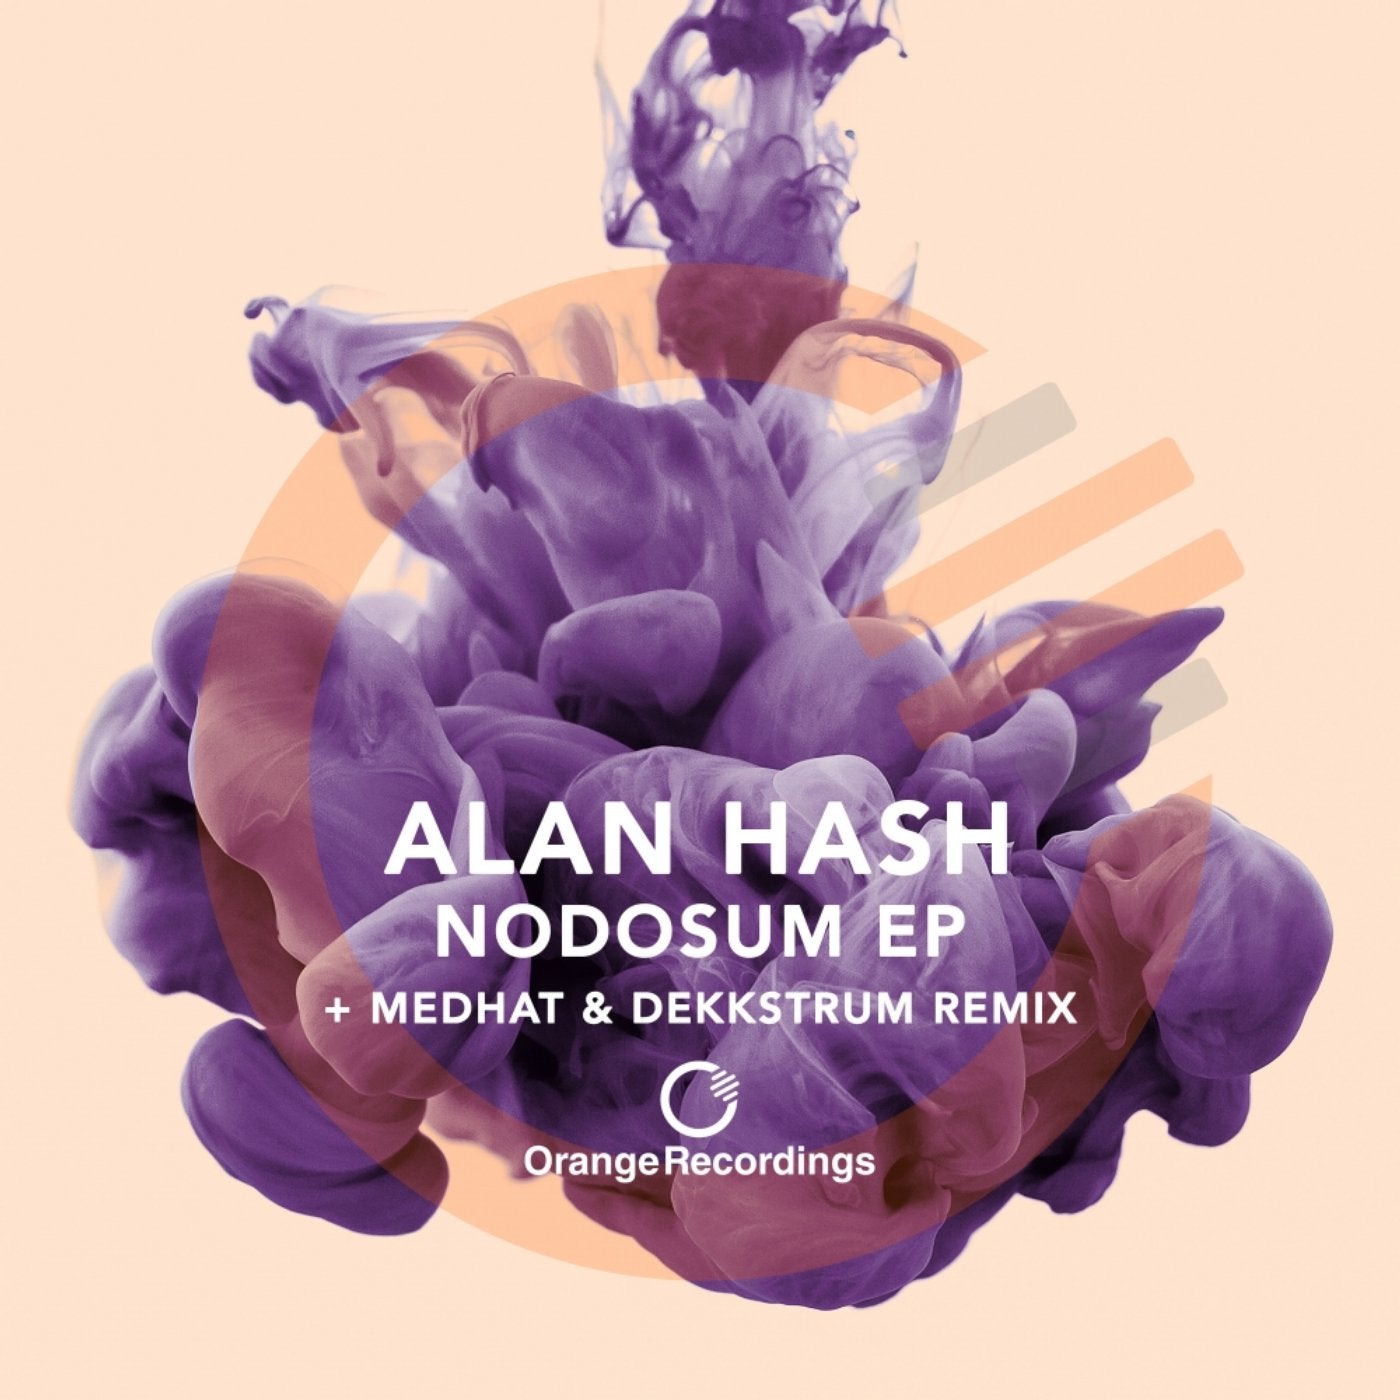 Nodosum EP